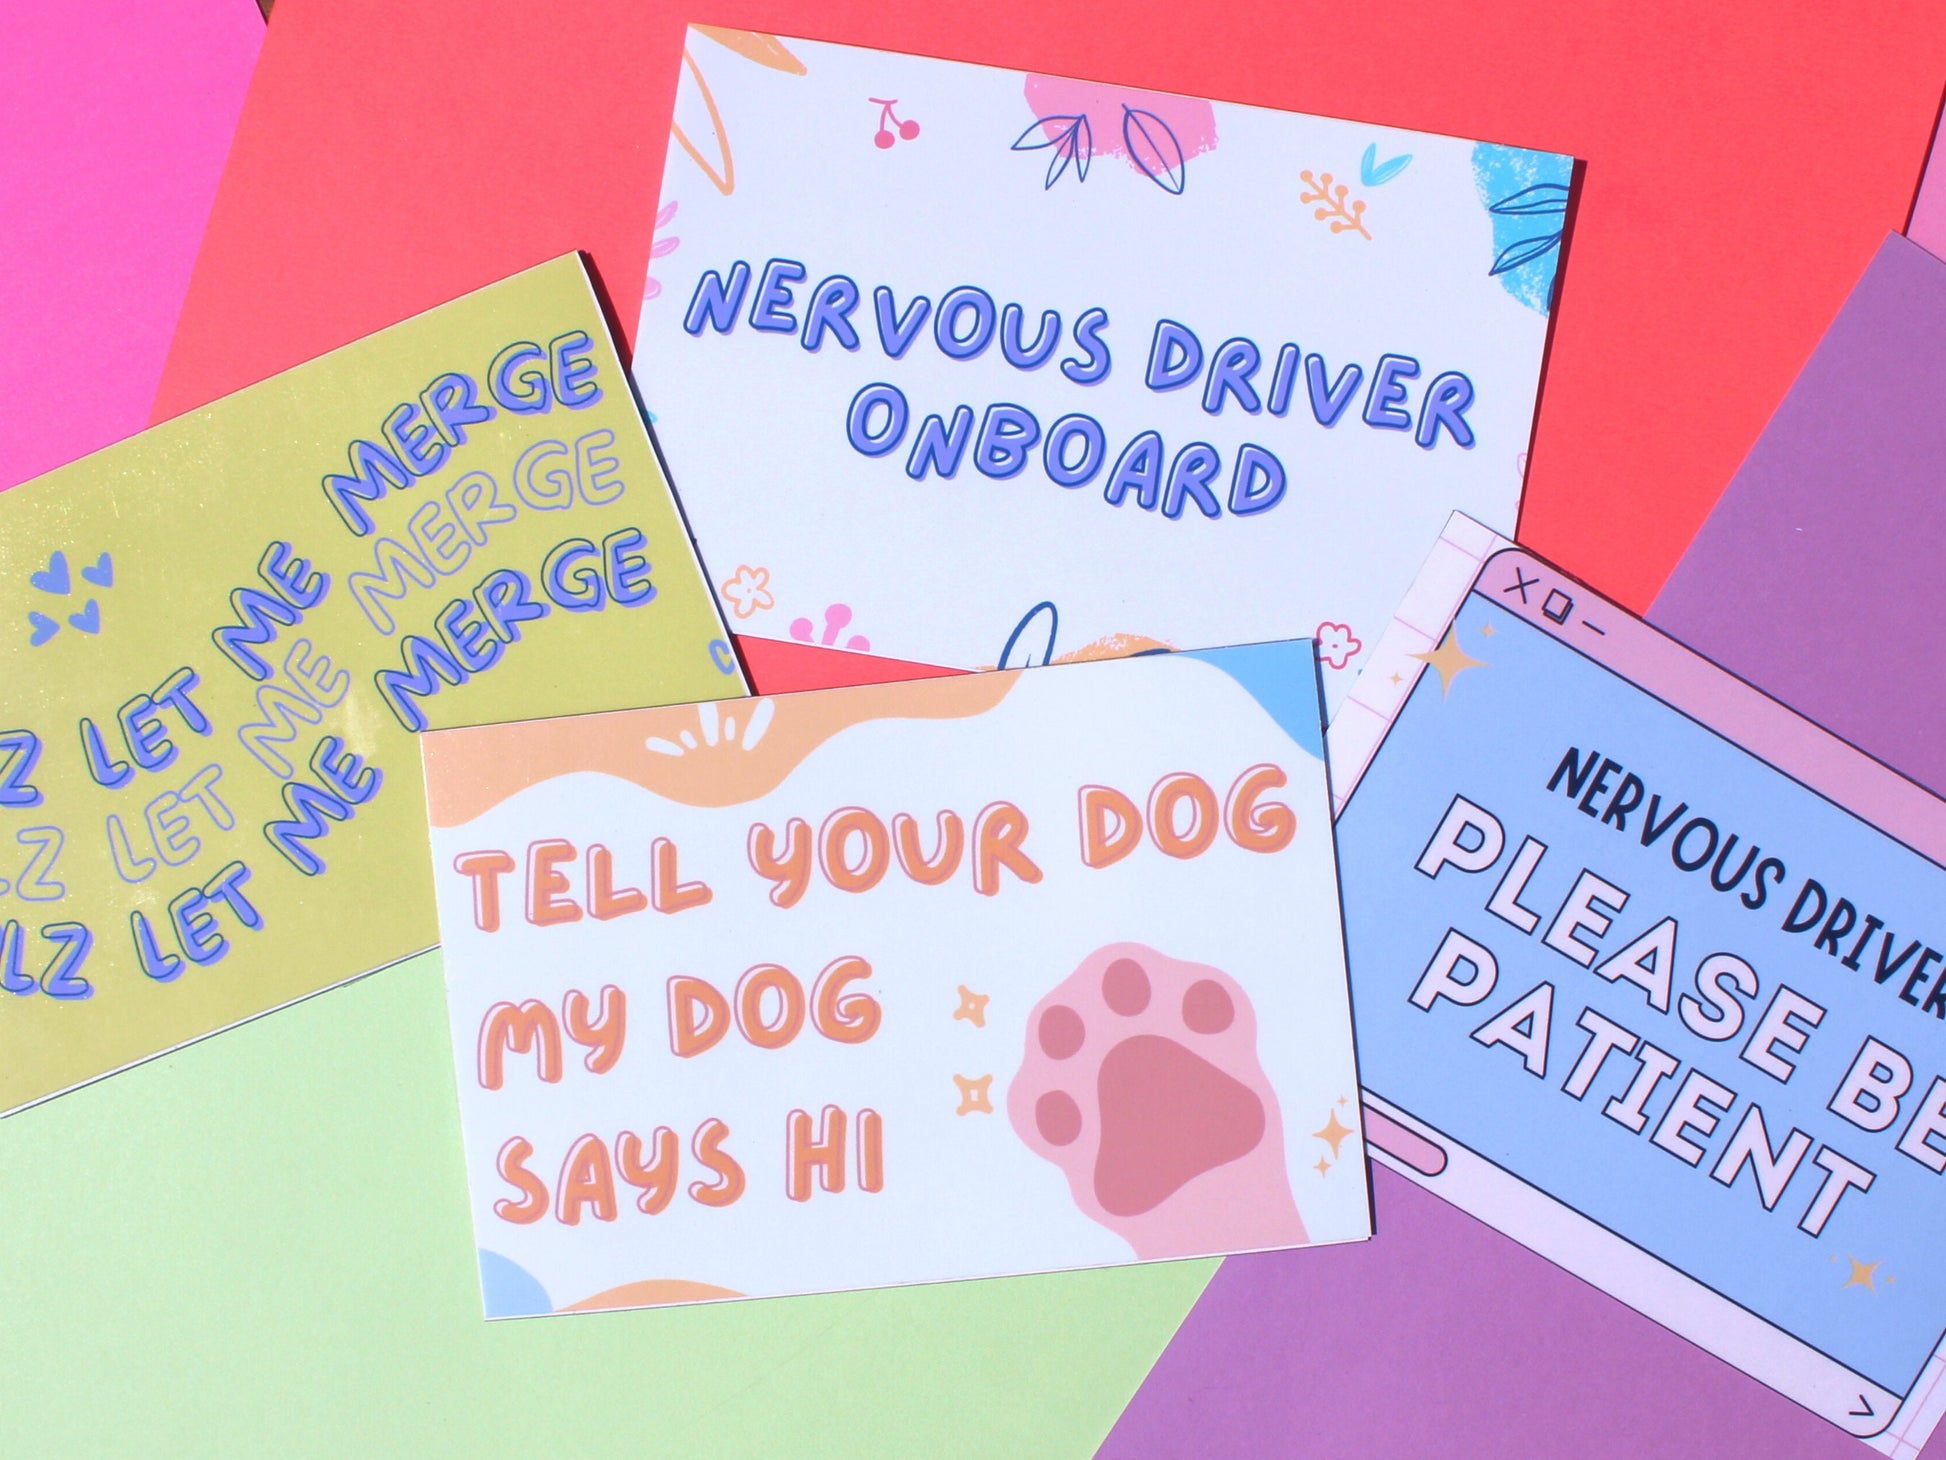 Tell Your Dog My Dog Says Hi Bumper Sticker | Funny Bumper Sticker | Cute Car Decals